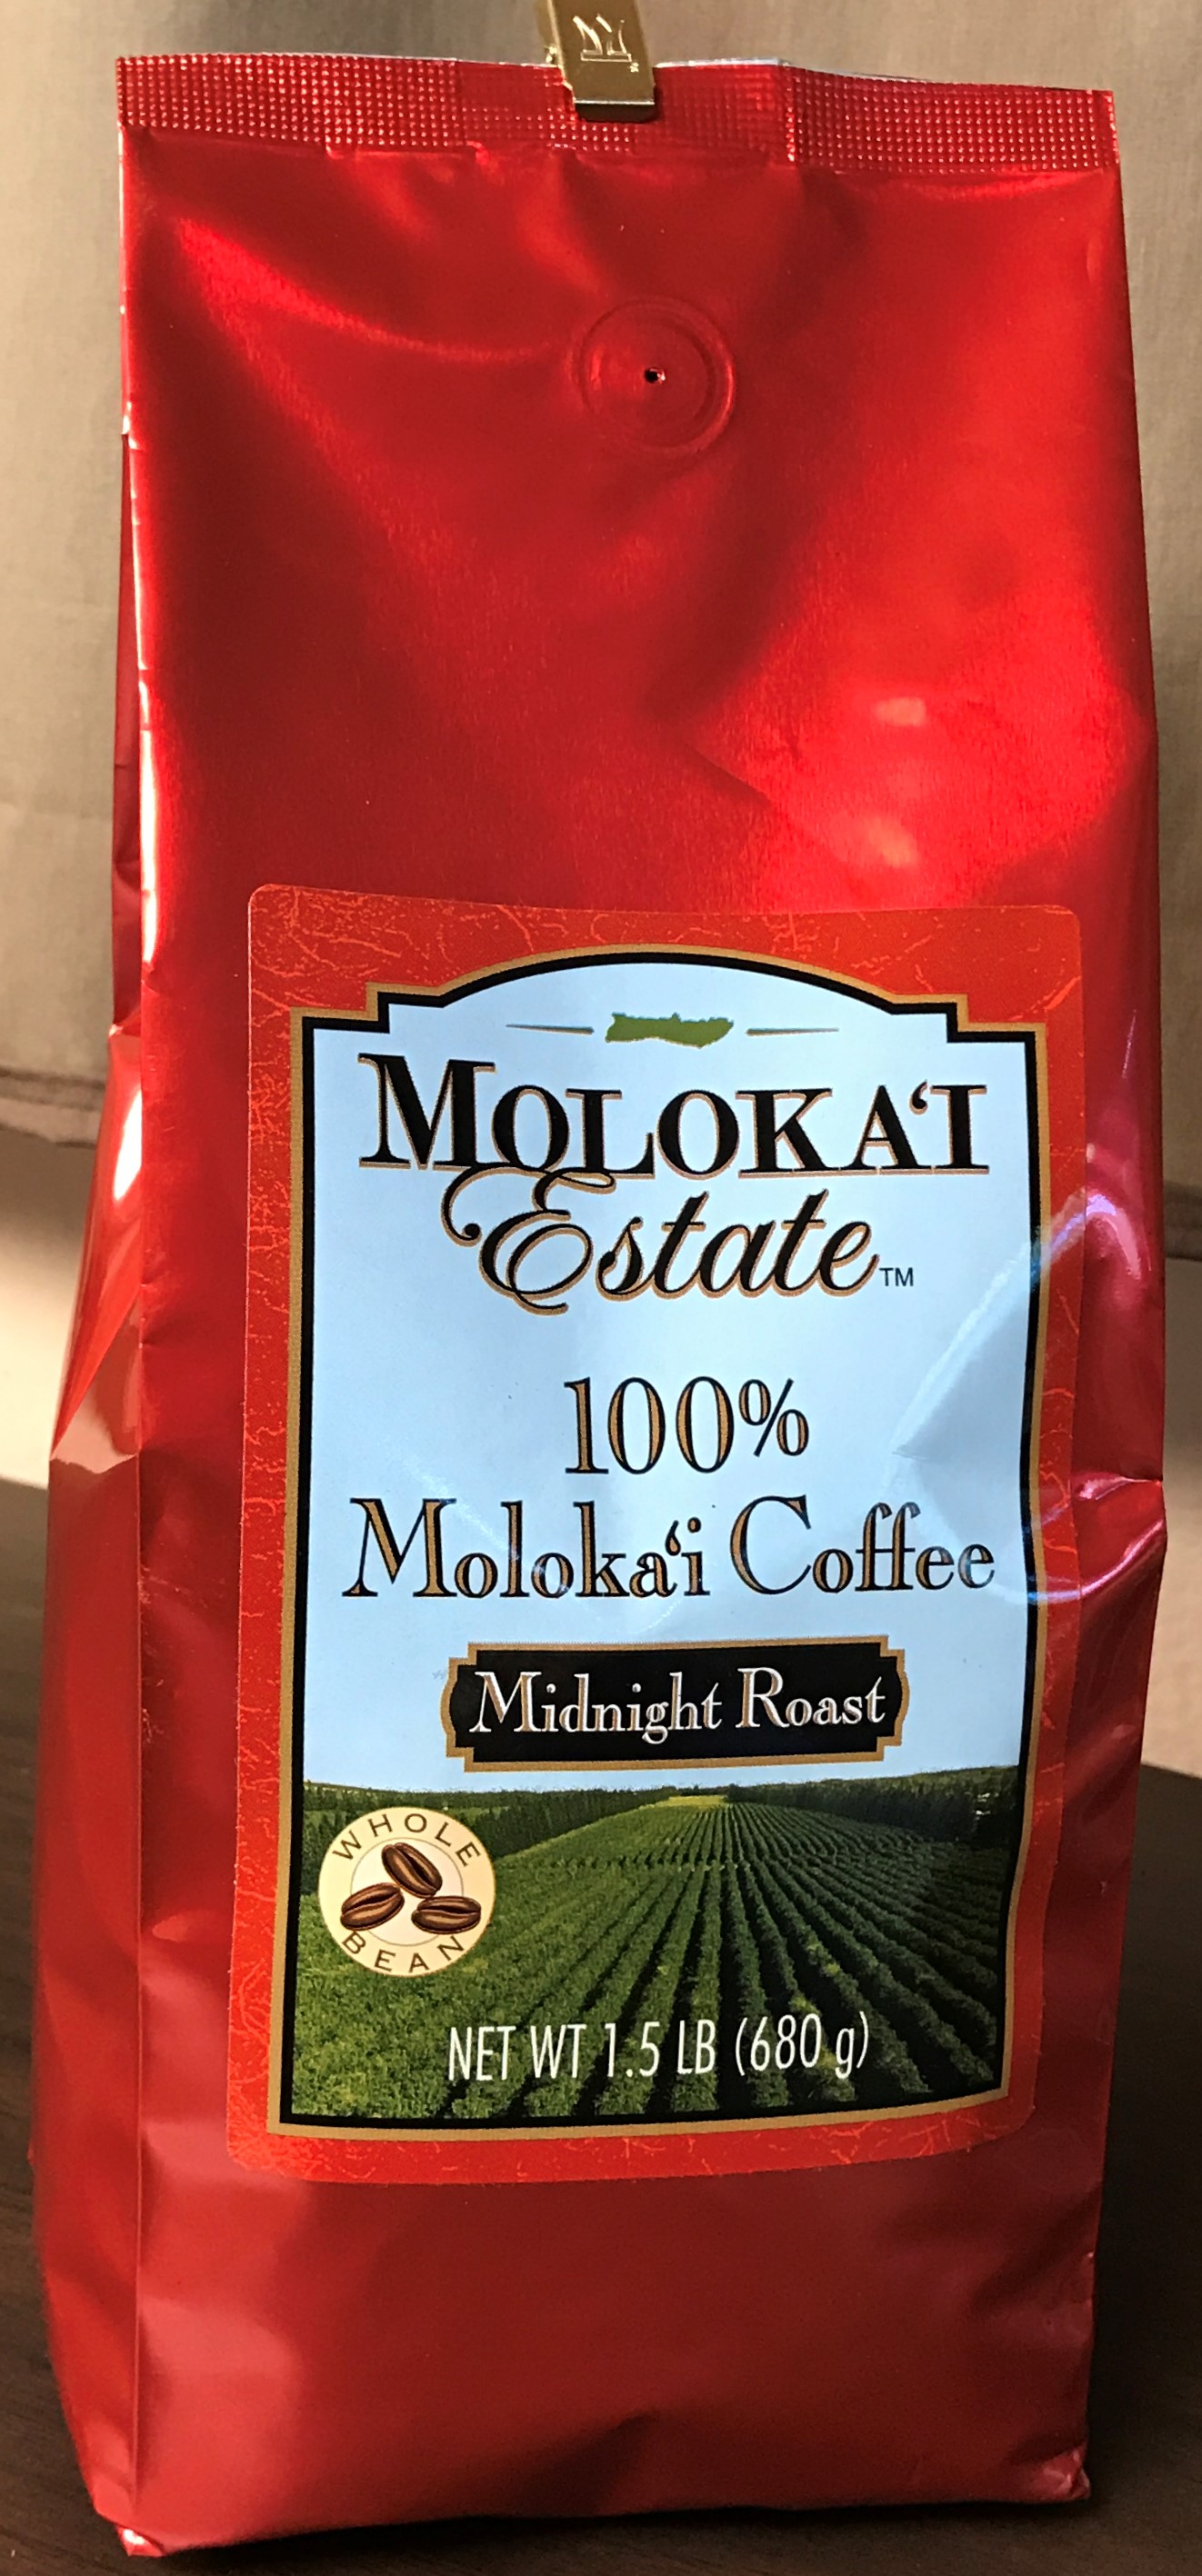 Molokai Coffee